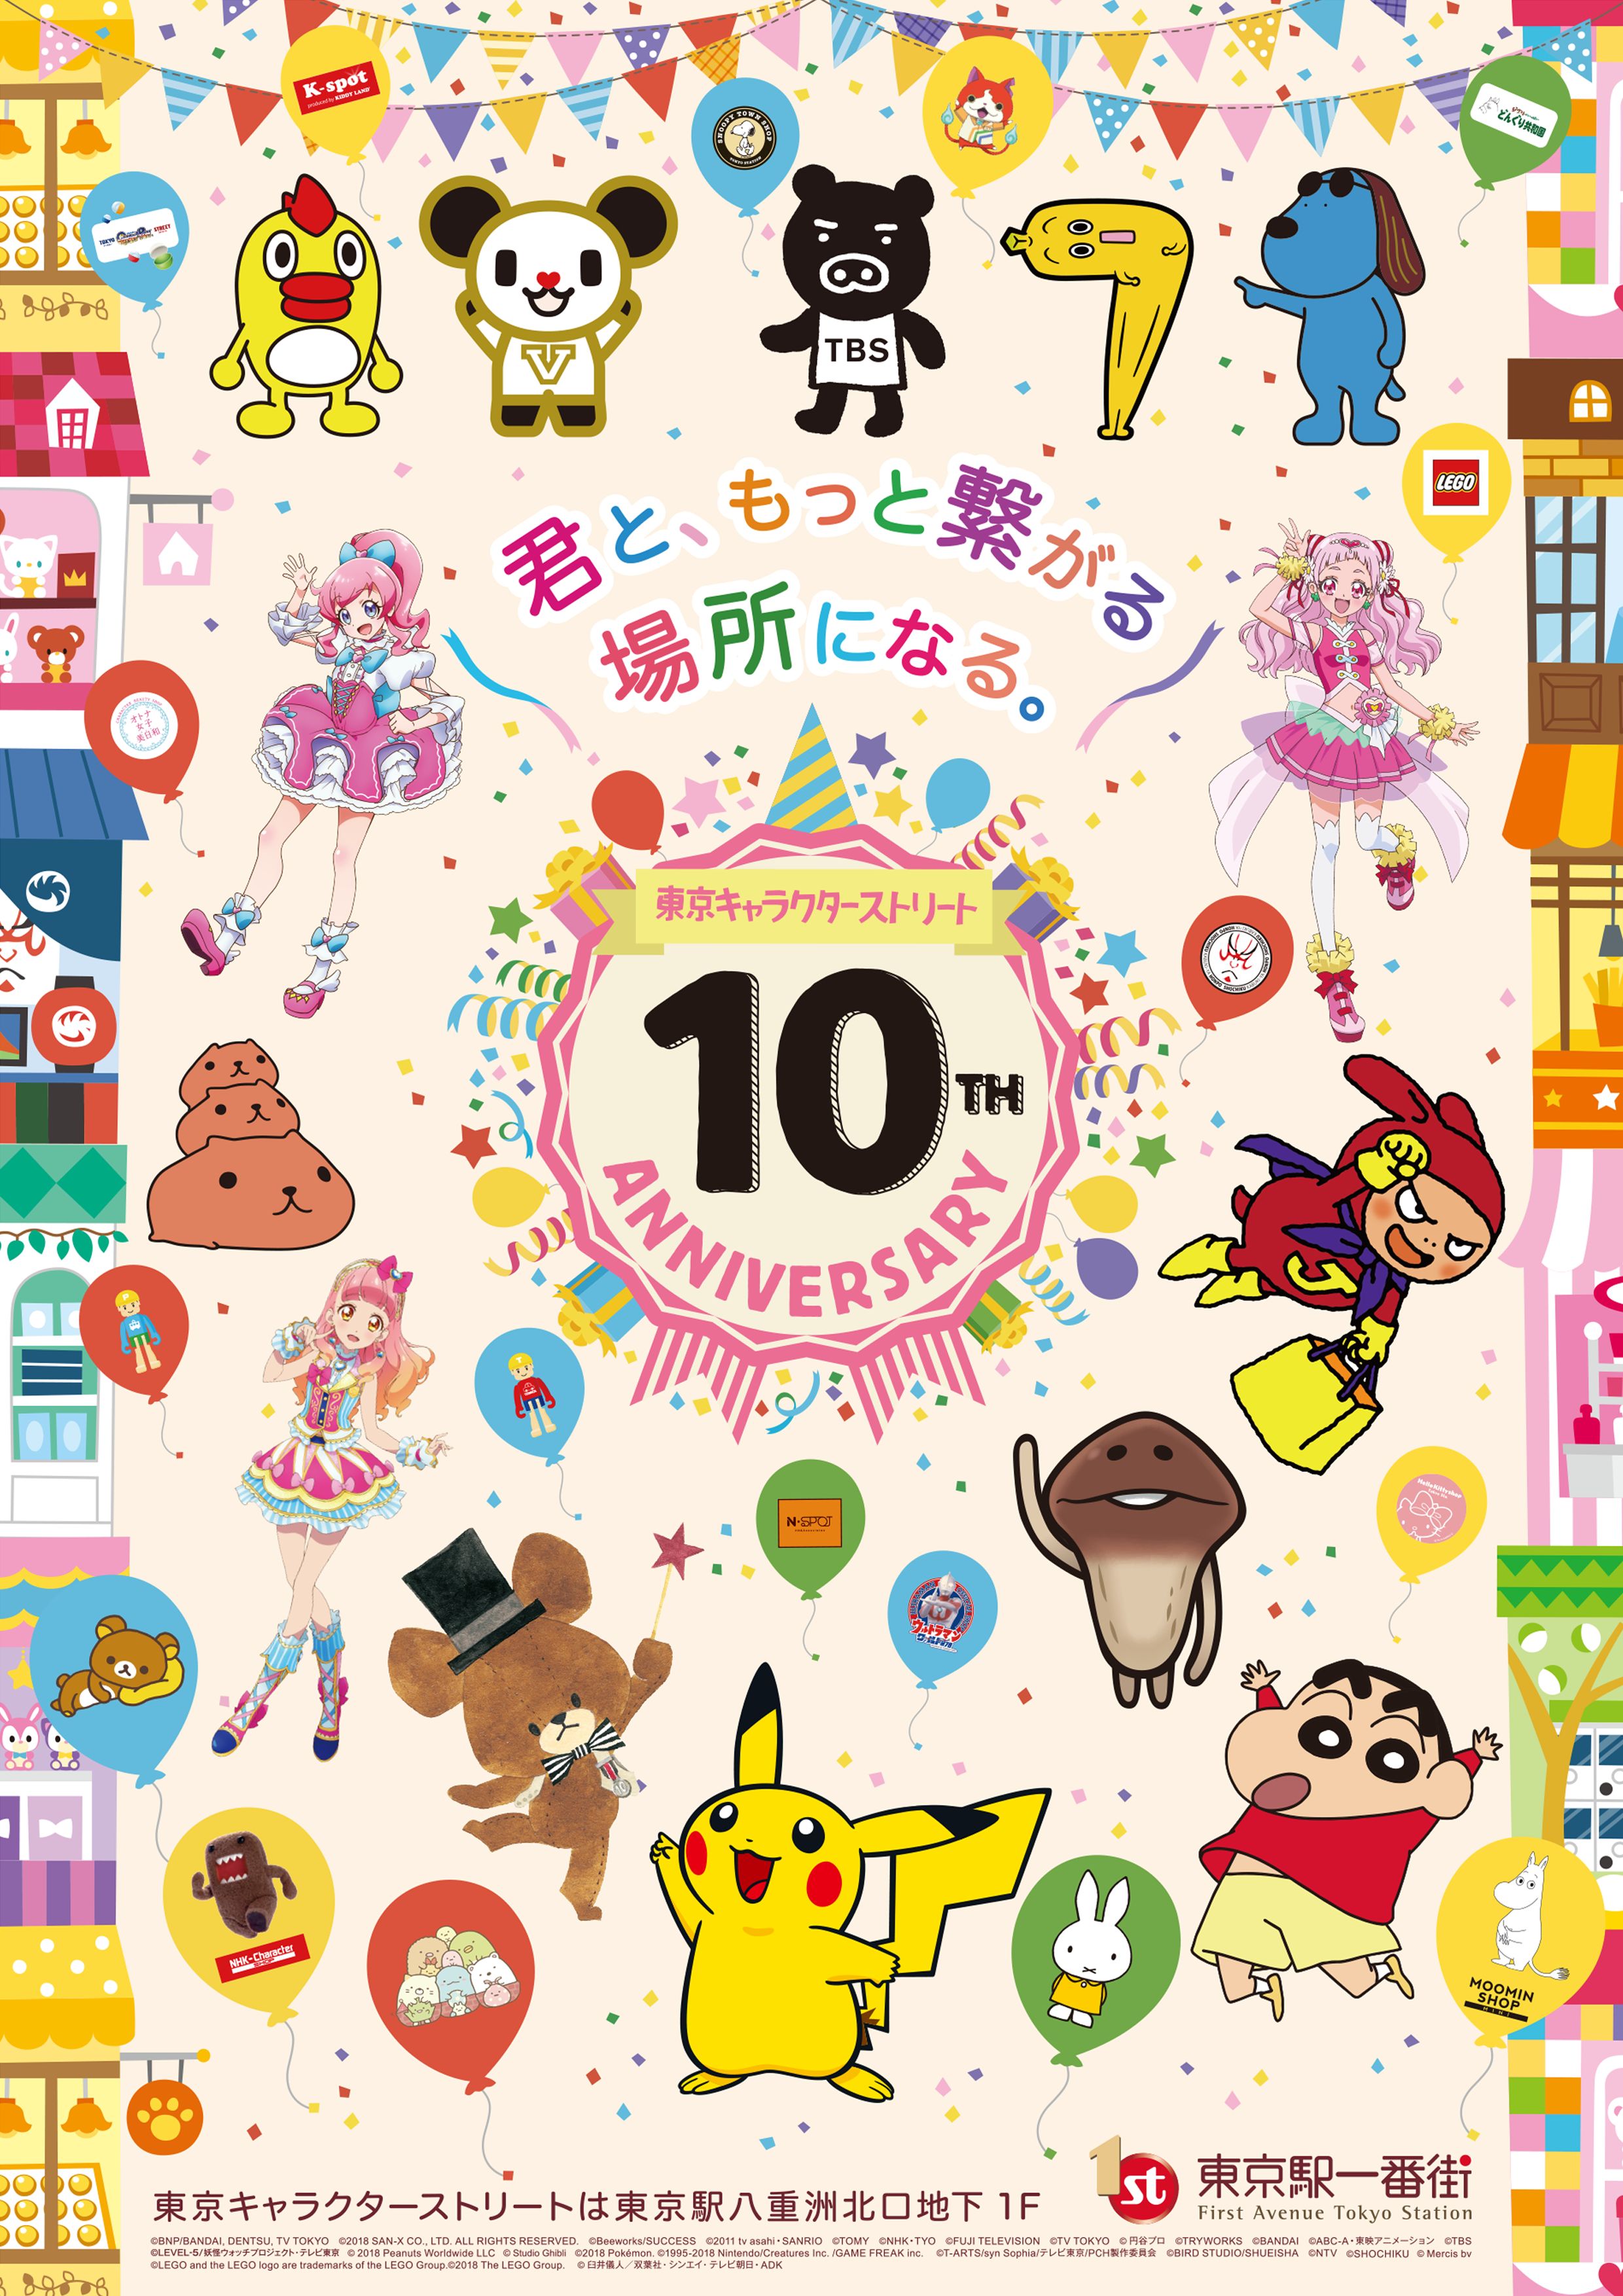 東京キャラクターストリート10周年記念 多数のキャラクターが出演する記念動画の放映や豪華キャラクター によるグリーティングを実施 東京ステーション開発株式会社のプレスリリース